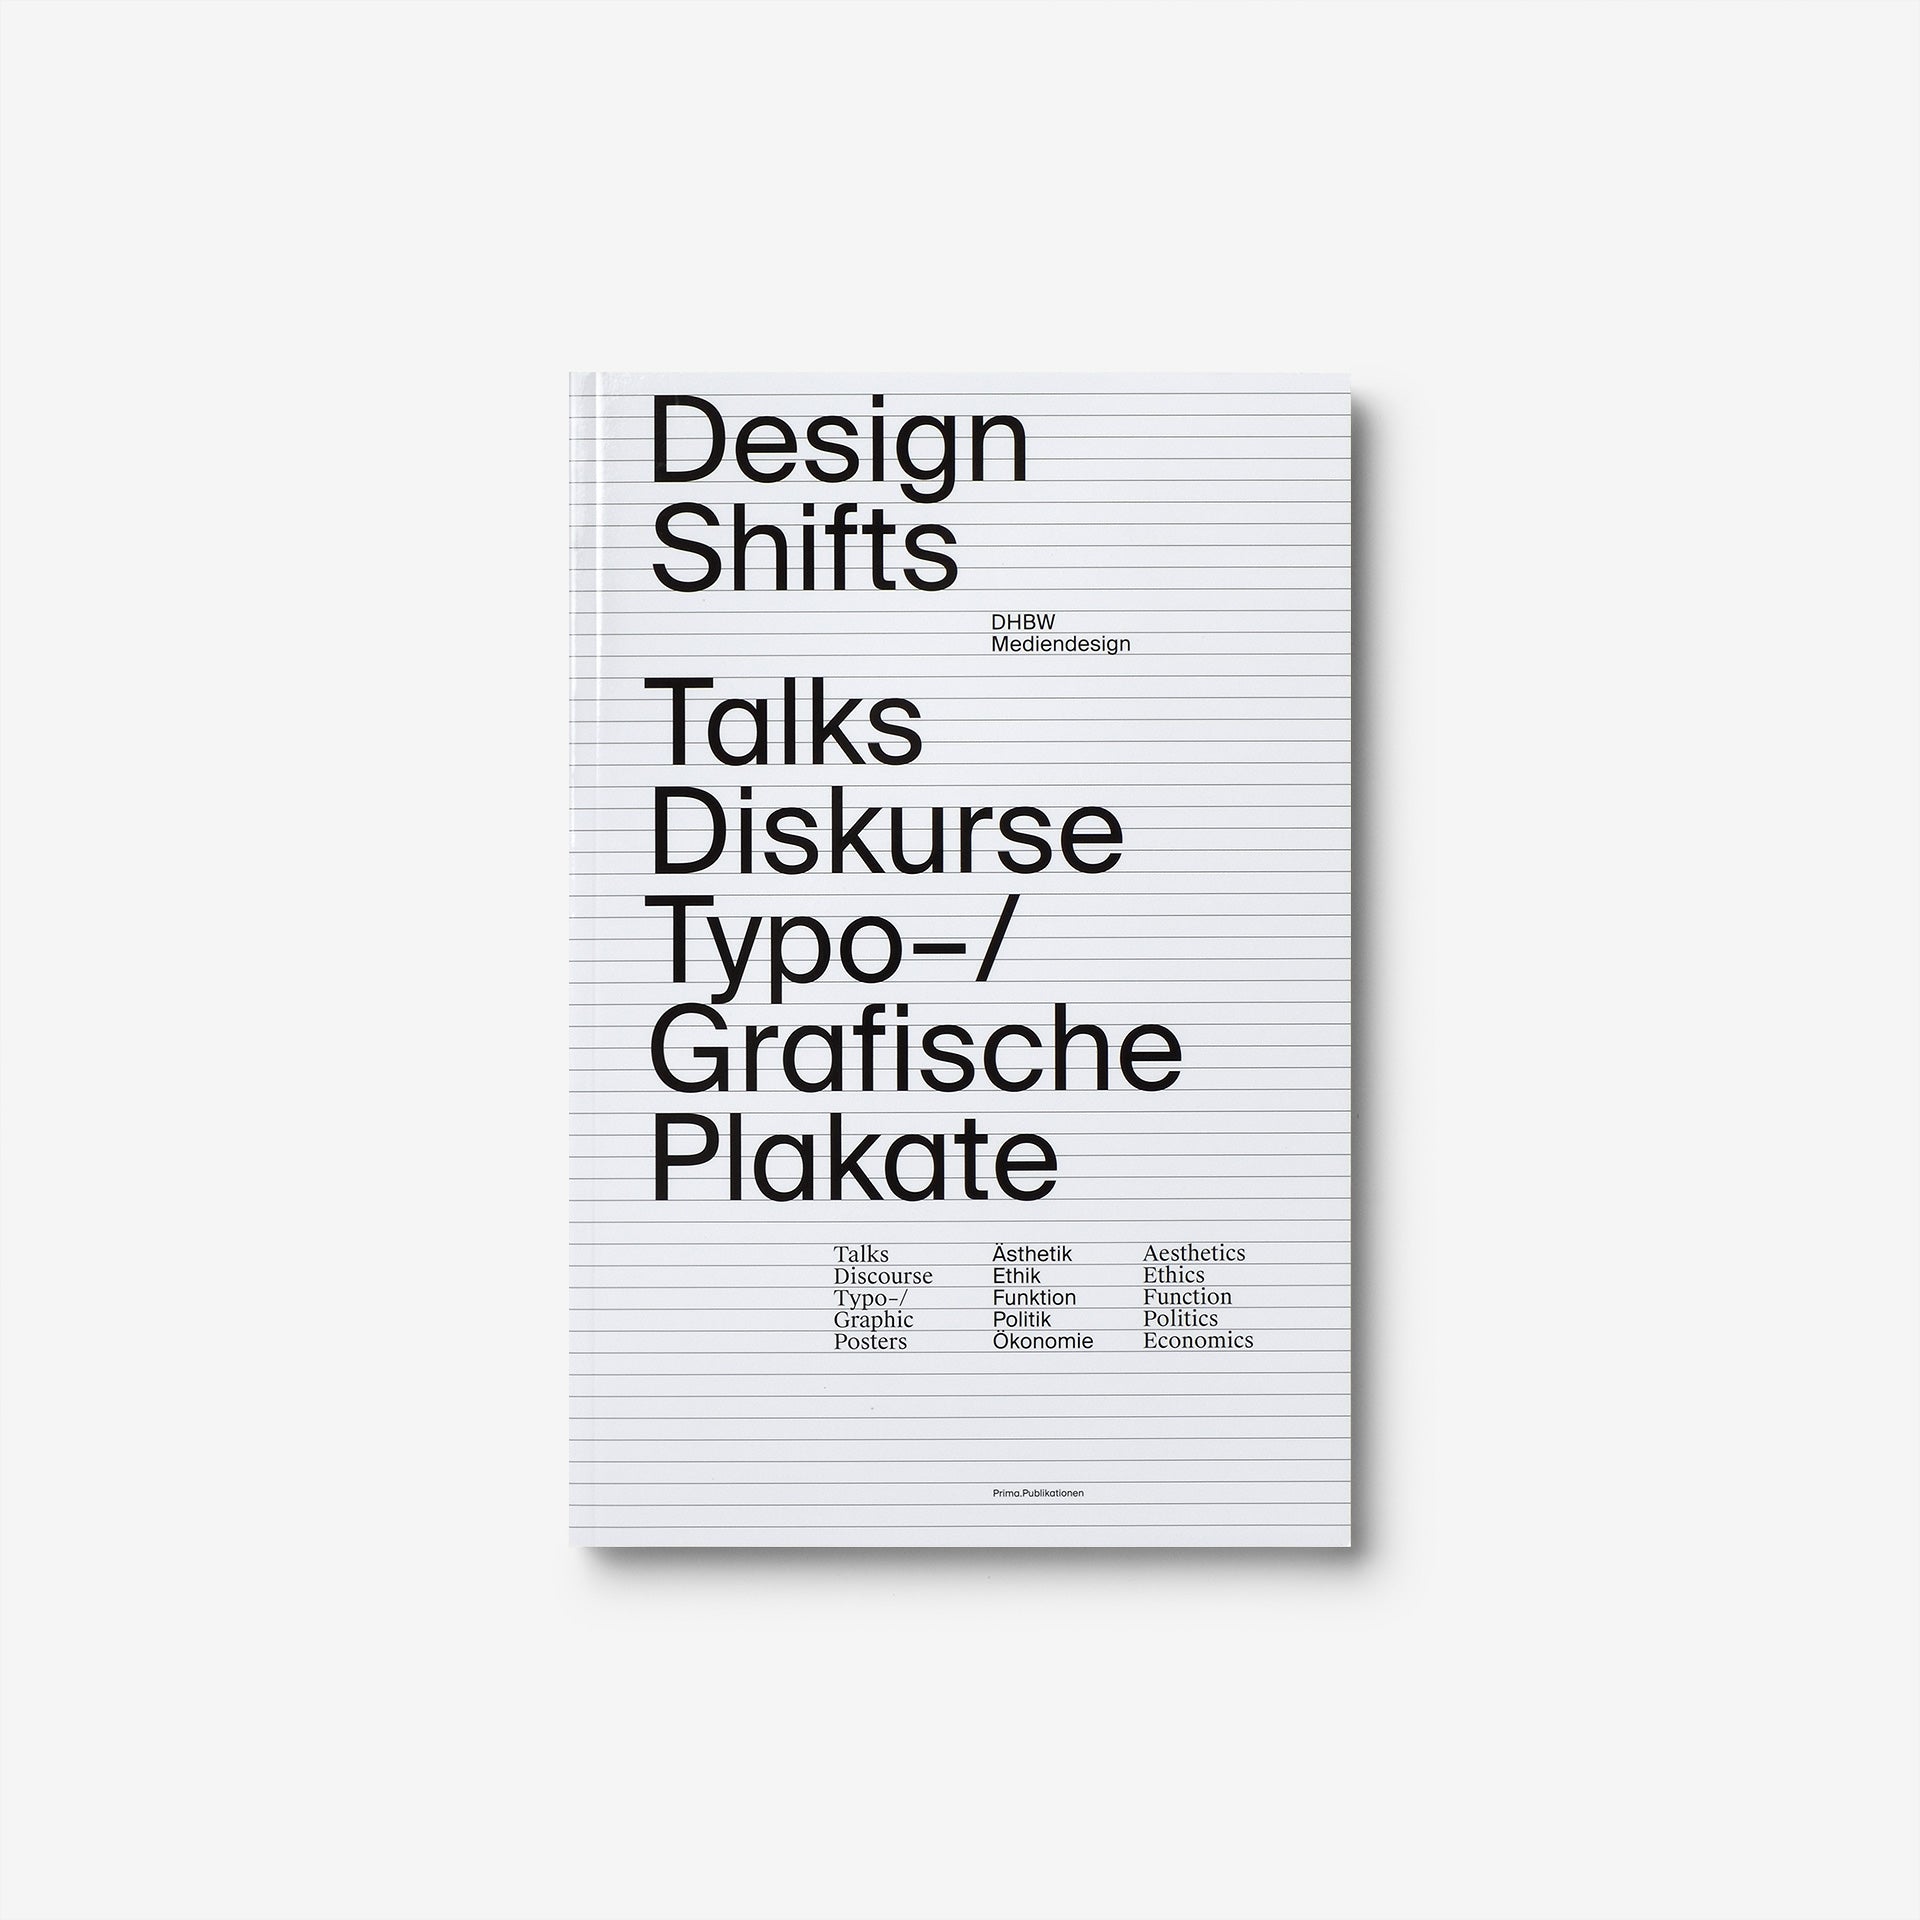 Design Shifts – Talks, Diskurse, Typo-/Grafische Plakate